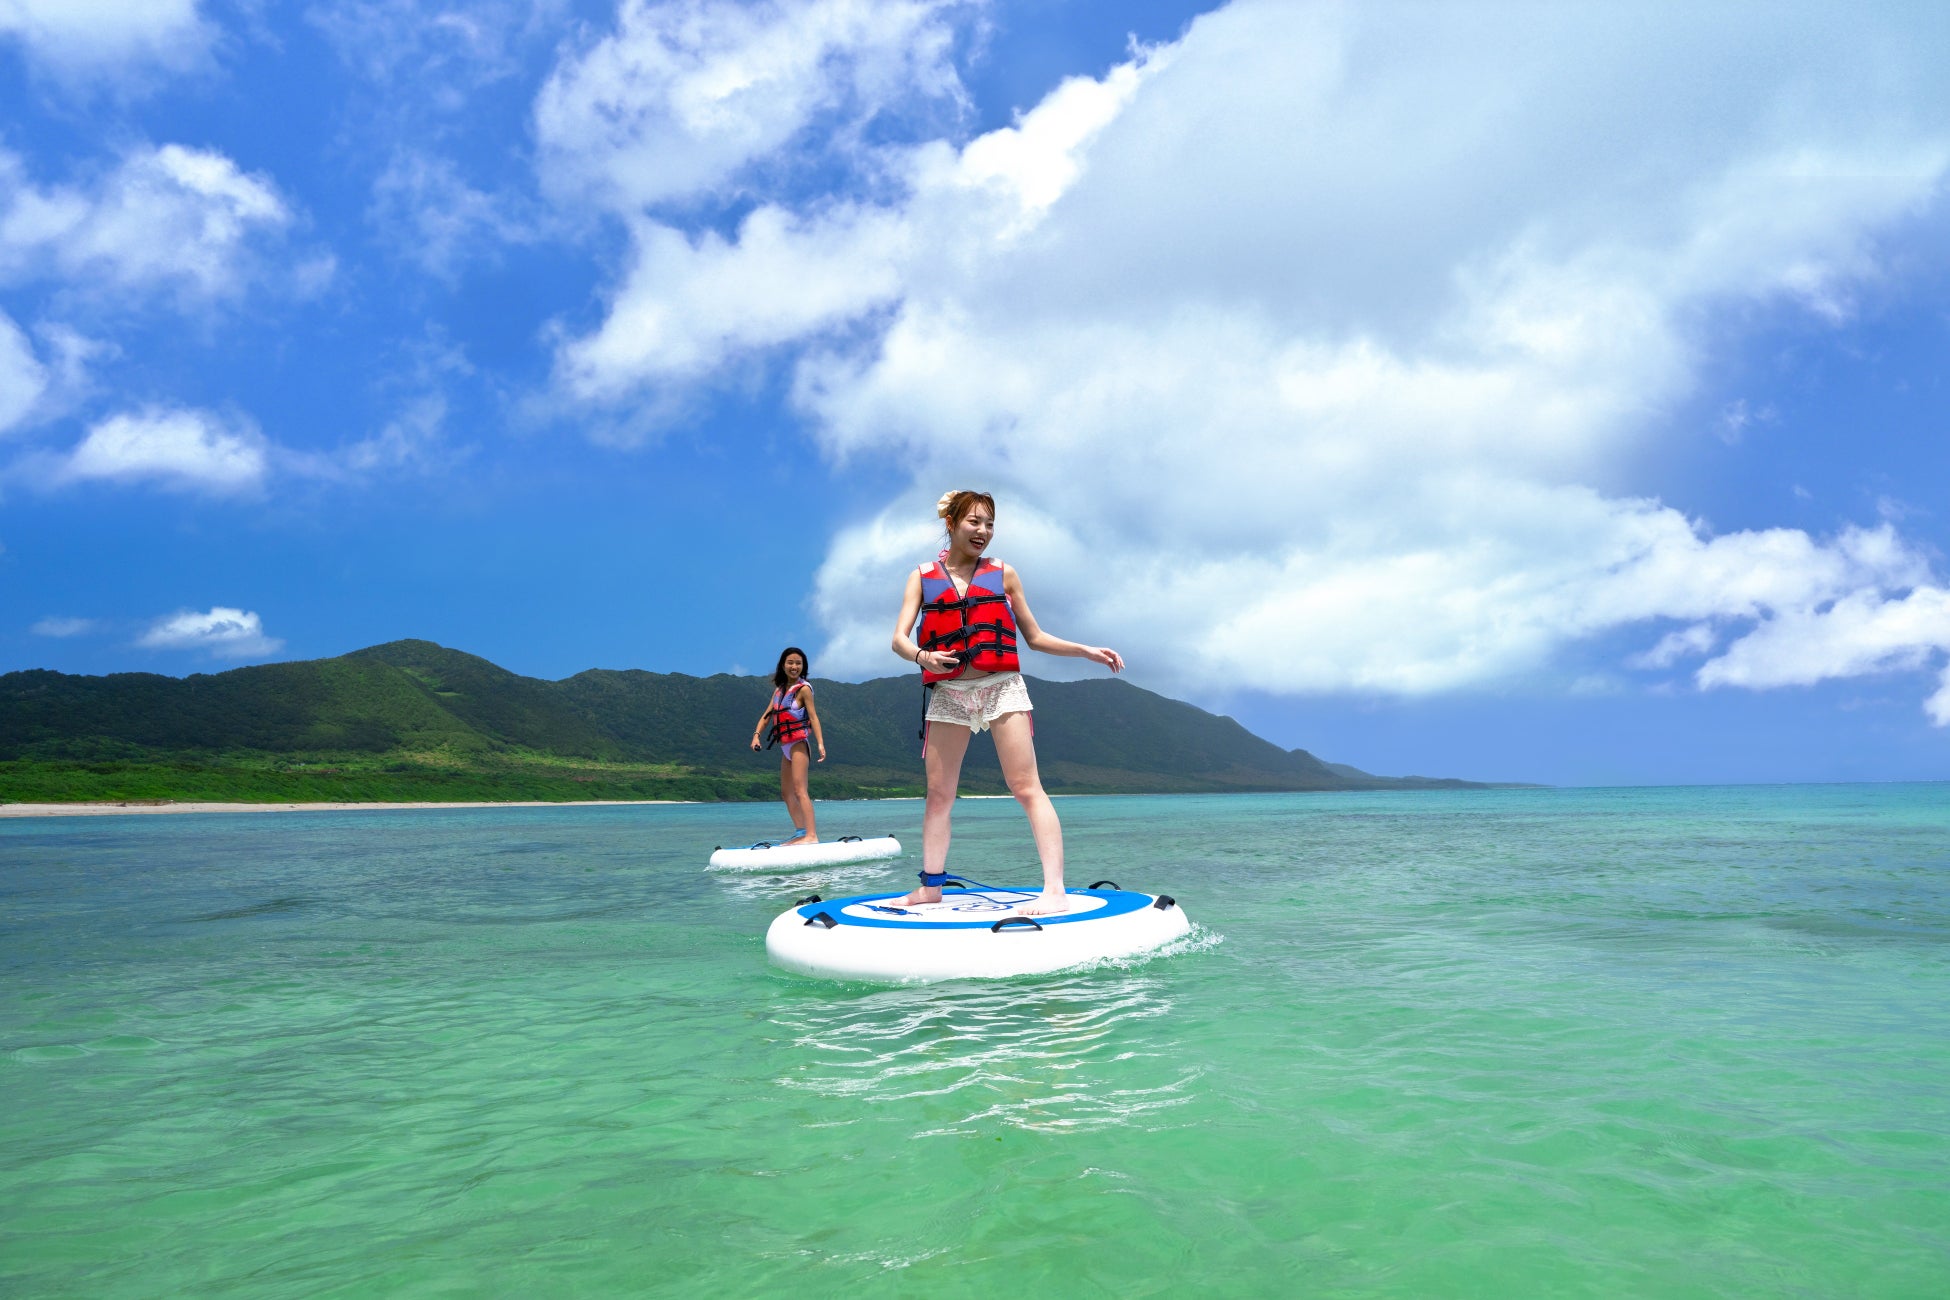 “水上を歩く感覚”を体験できる水上パーソナルクラフト「Wheeebo」、新たに石垣島の2カ所のリゾート施設でレンタル提供開始